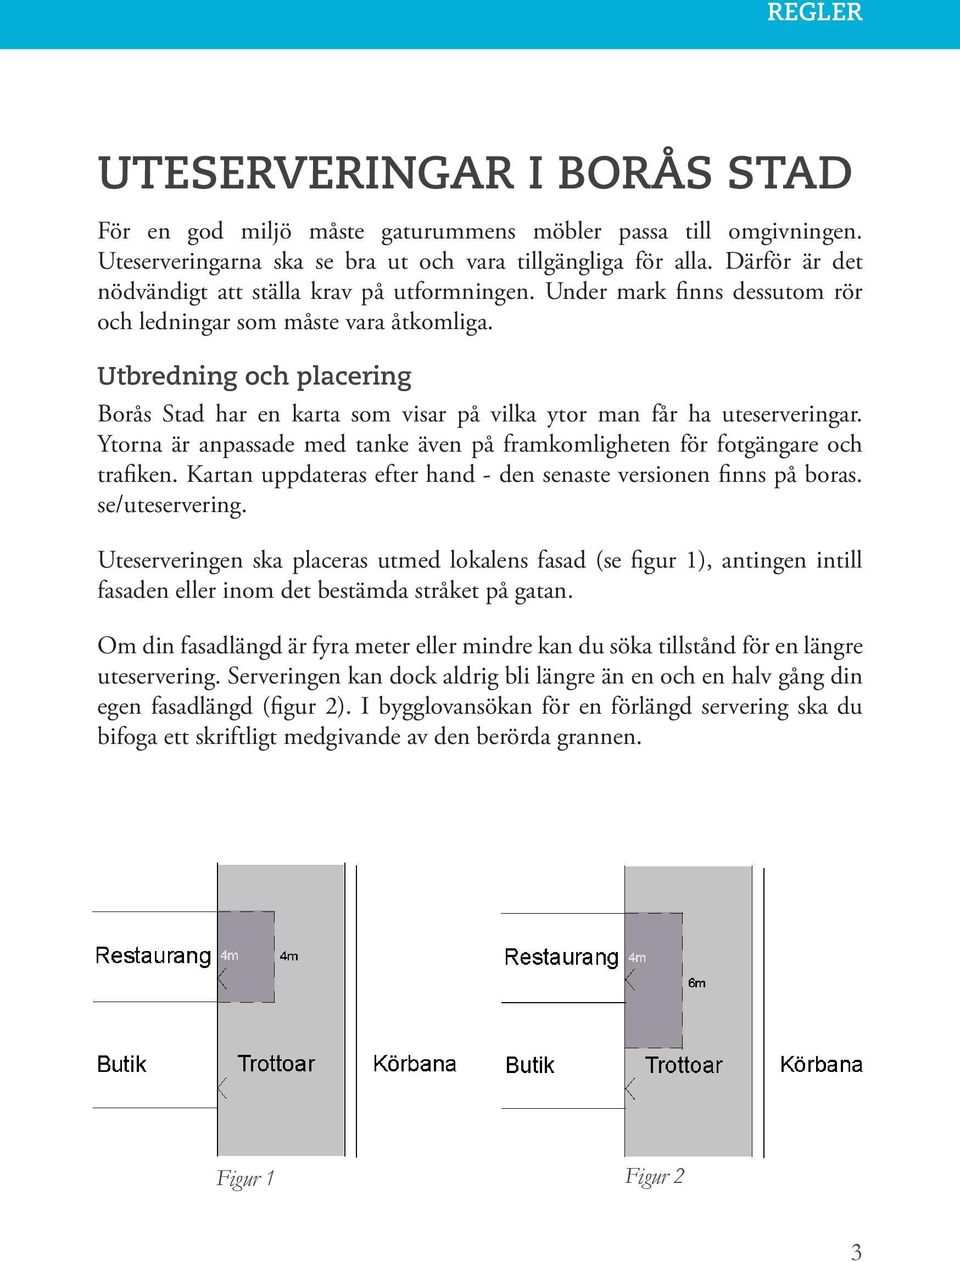 Utbredning och placering Borås Stad har en karta som visar på vilka ytor man får ha uteserveringar. Ytorna är anpassade med tanke även på framkomligheten för fotgängare och trafiken.